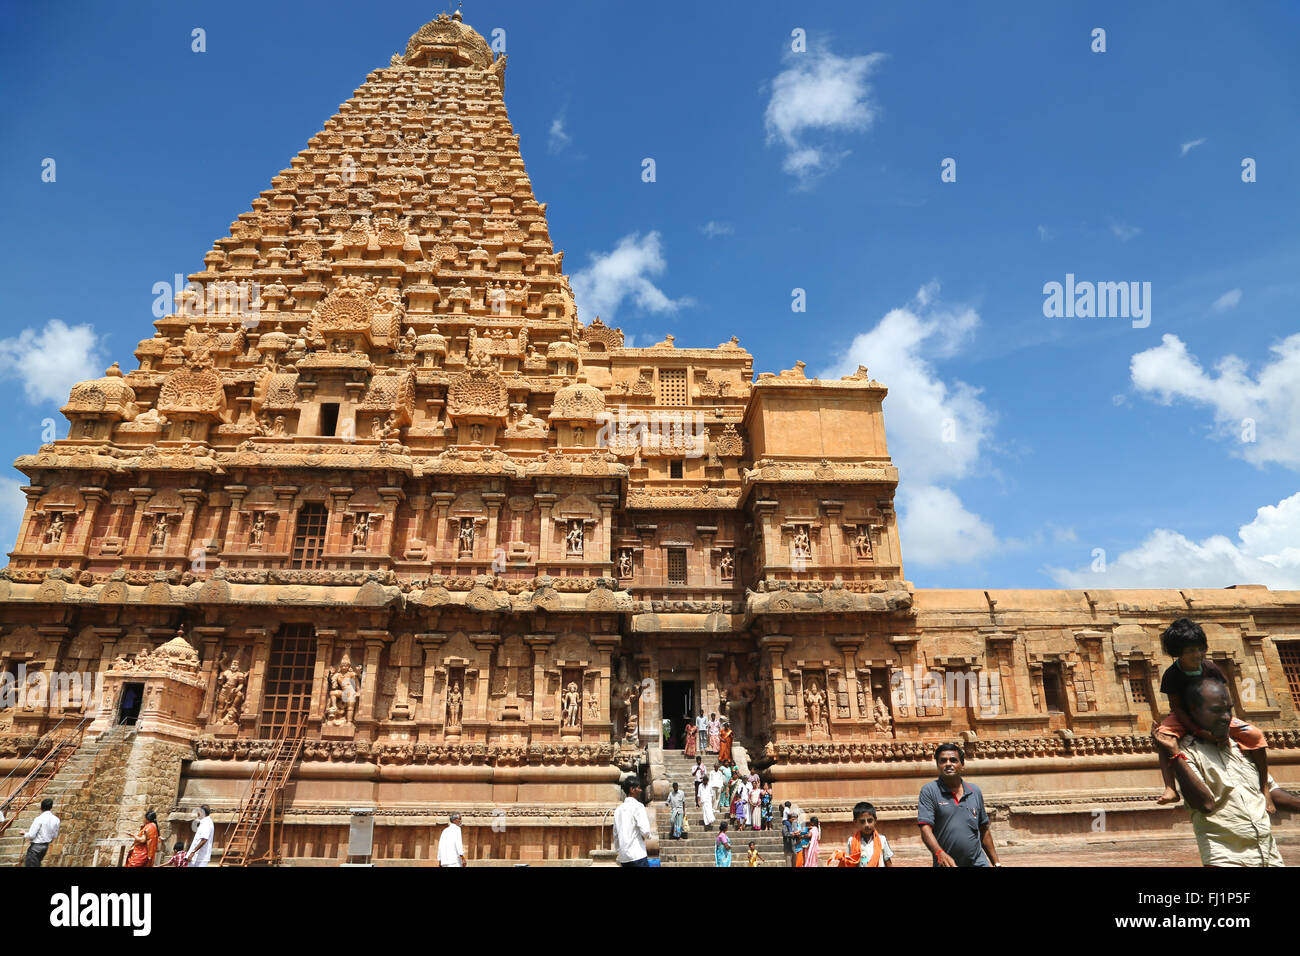 Splendida architettura del Tempio Brihadeeswarar, un tempio indù dedicato al dio Shiva a Thanjavur, nello stato del Tamil Nadu, India Foto Stock